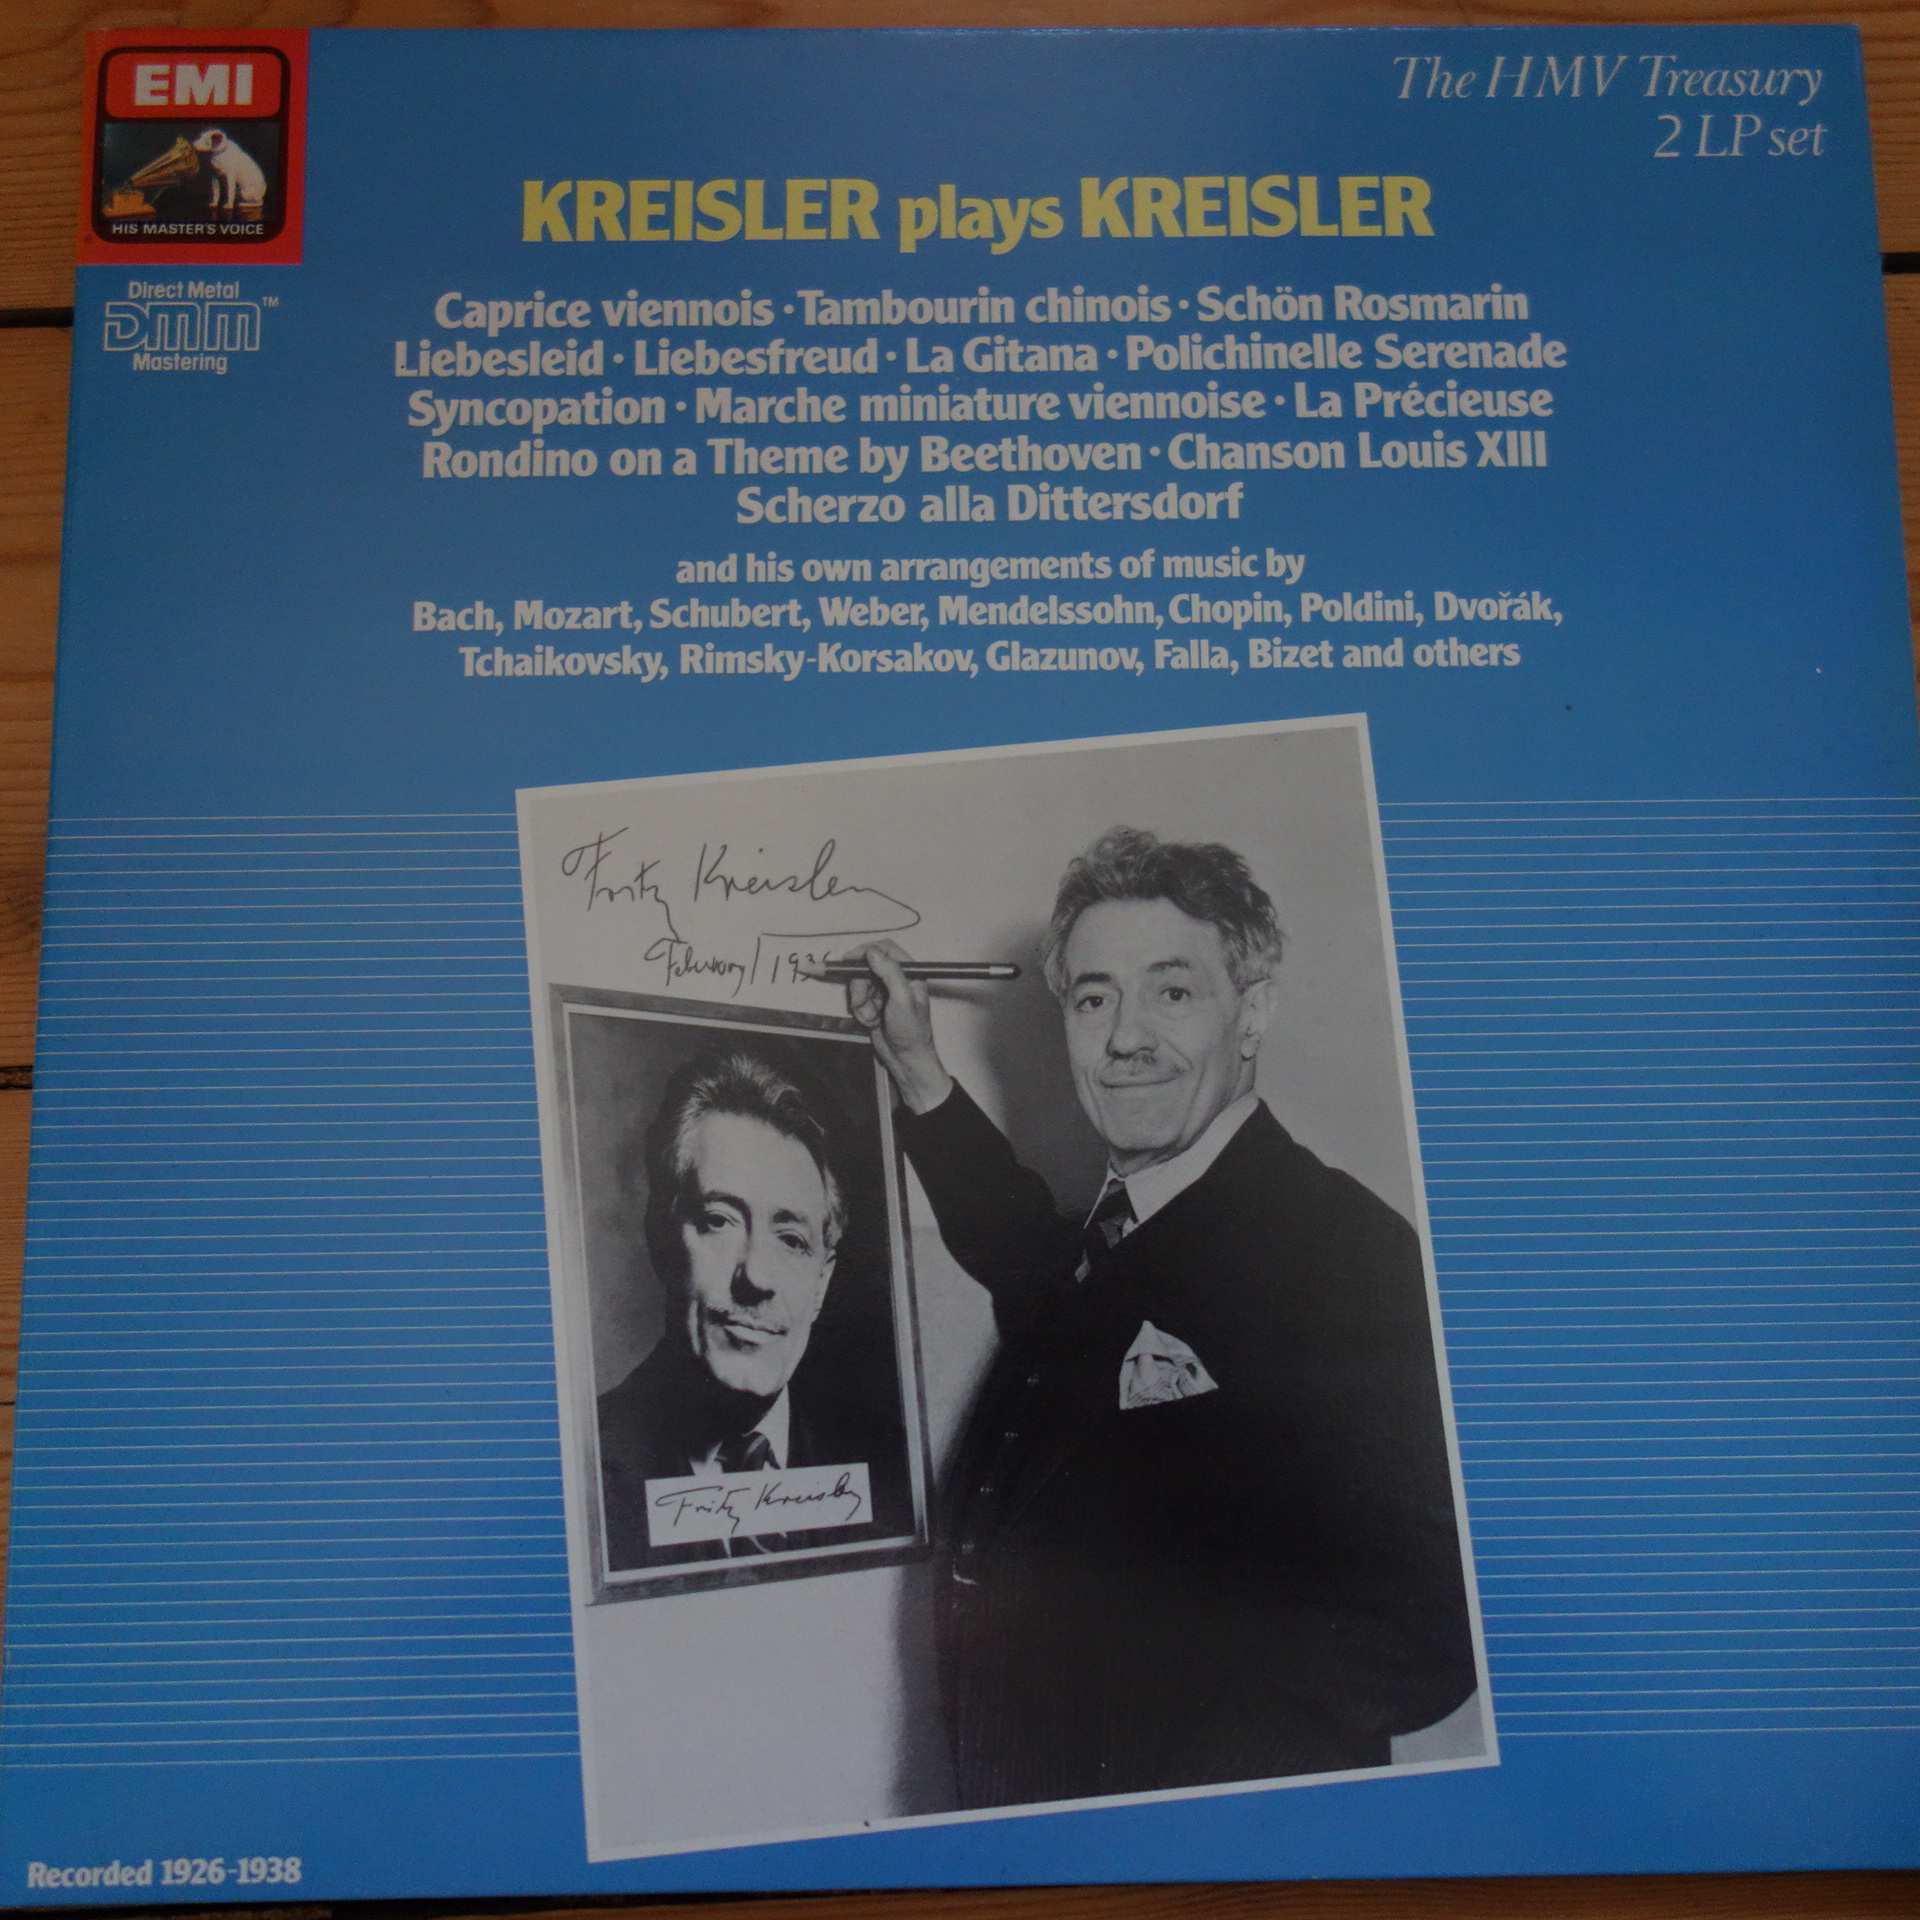 EM 29 0556 3 Kreisler plays Kreisler 2 LP set